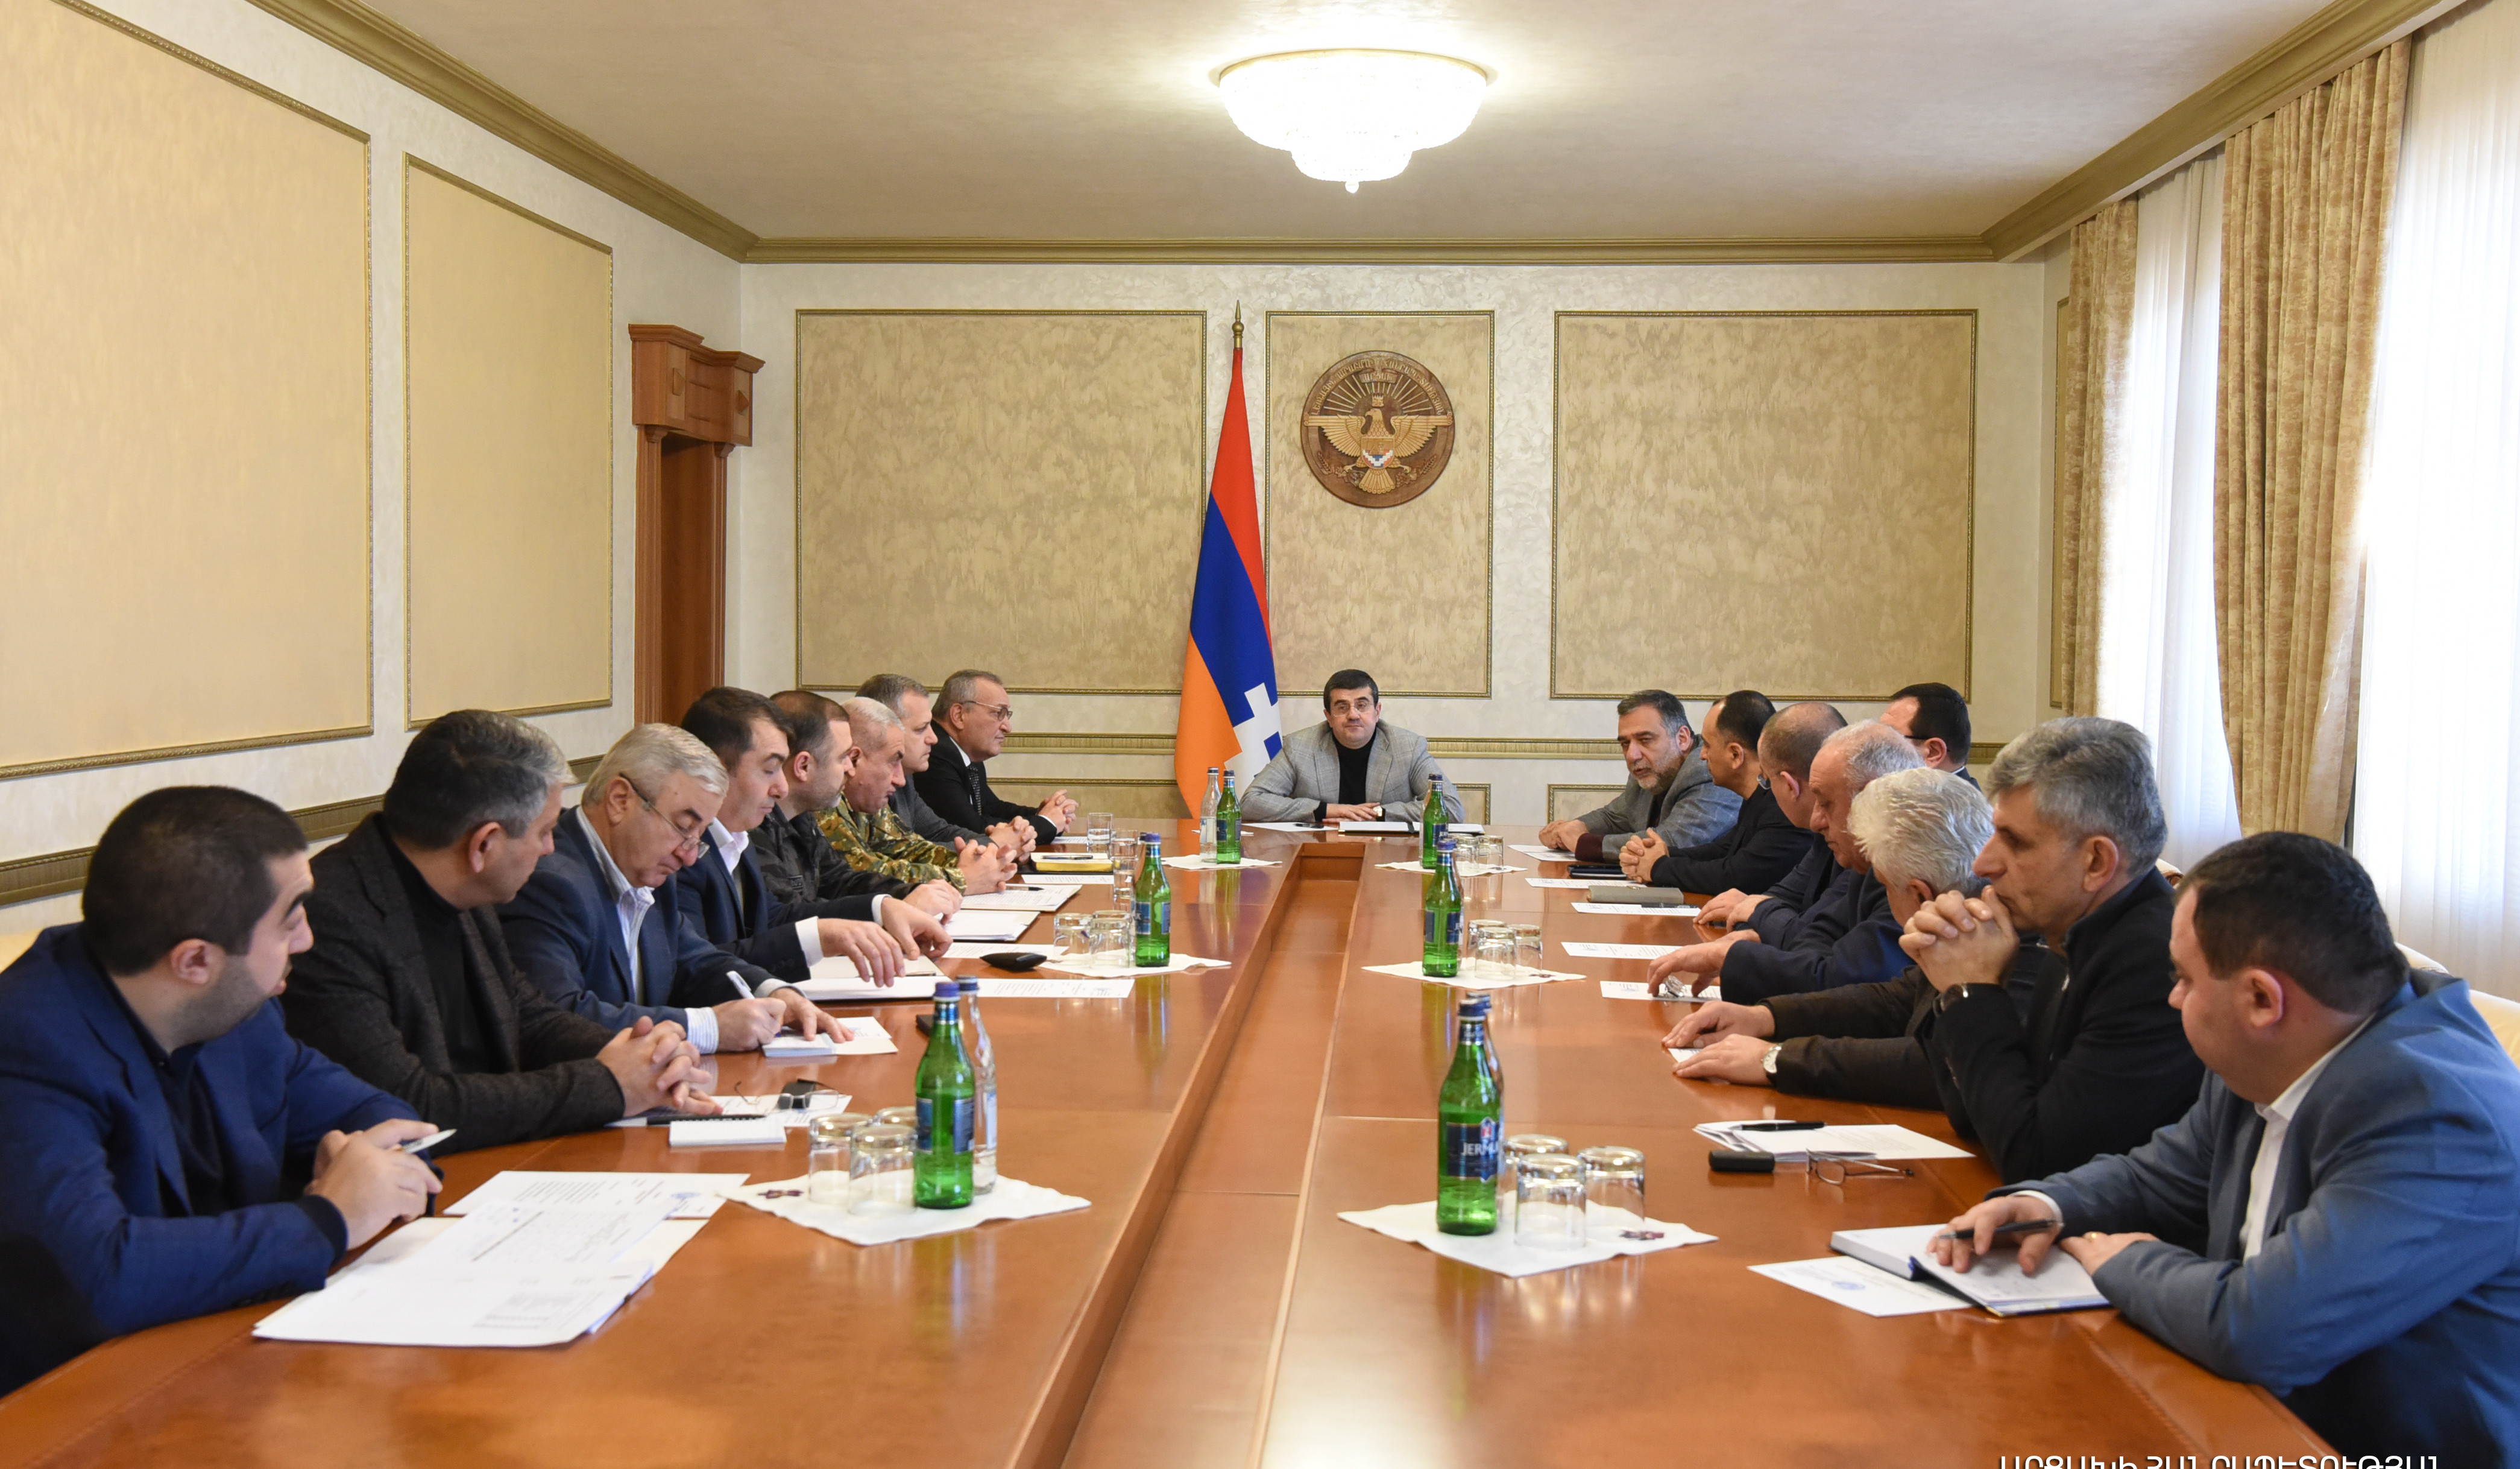 Ռուսական կողմի միջնորդությամբ կազմակերպվել է հաղորդակցություն ադրբեջանական կողմի հետ.  Արցախի նախագահի գլխավորությամբ ԱԽ նիստ է անցկացվել